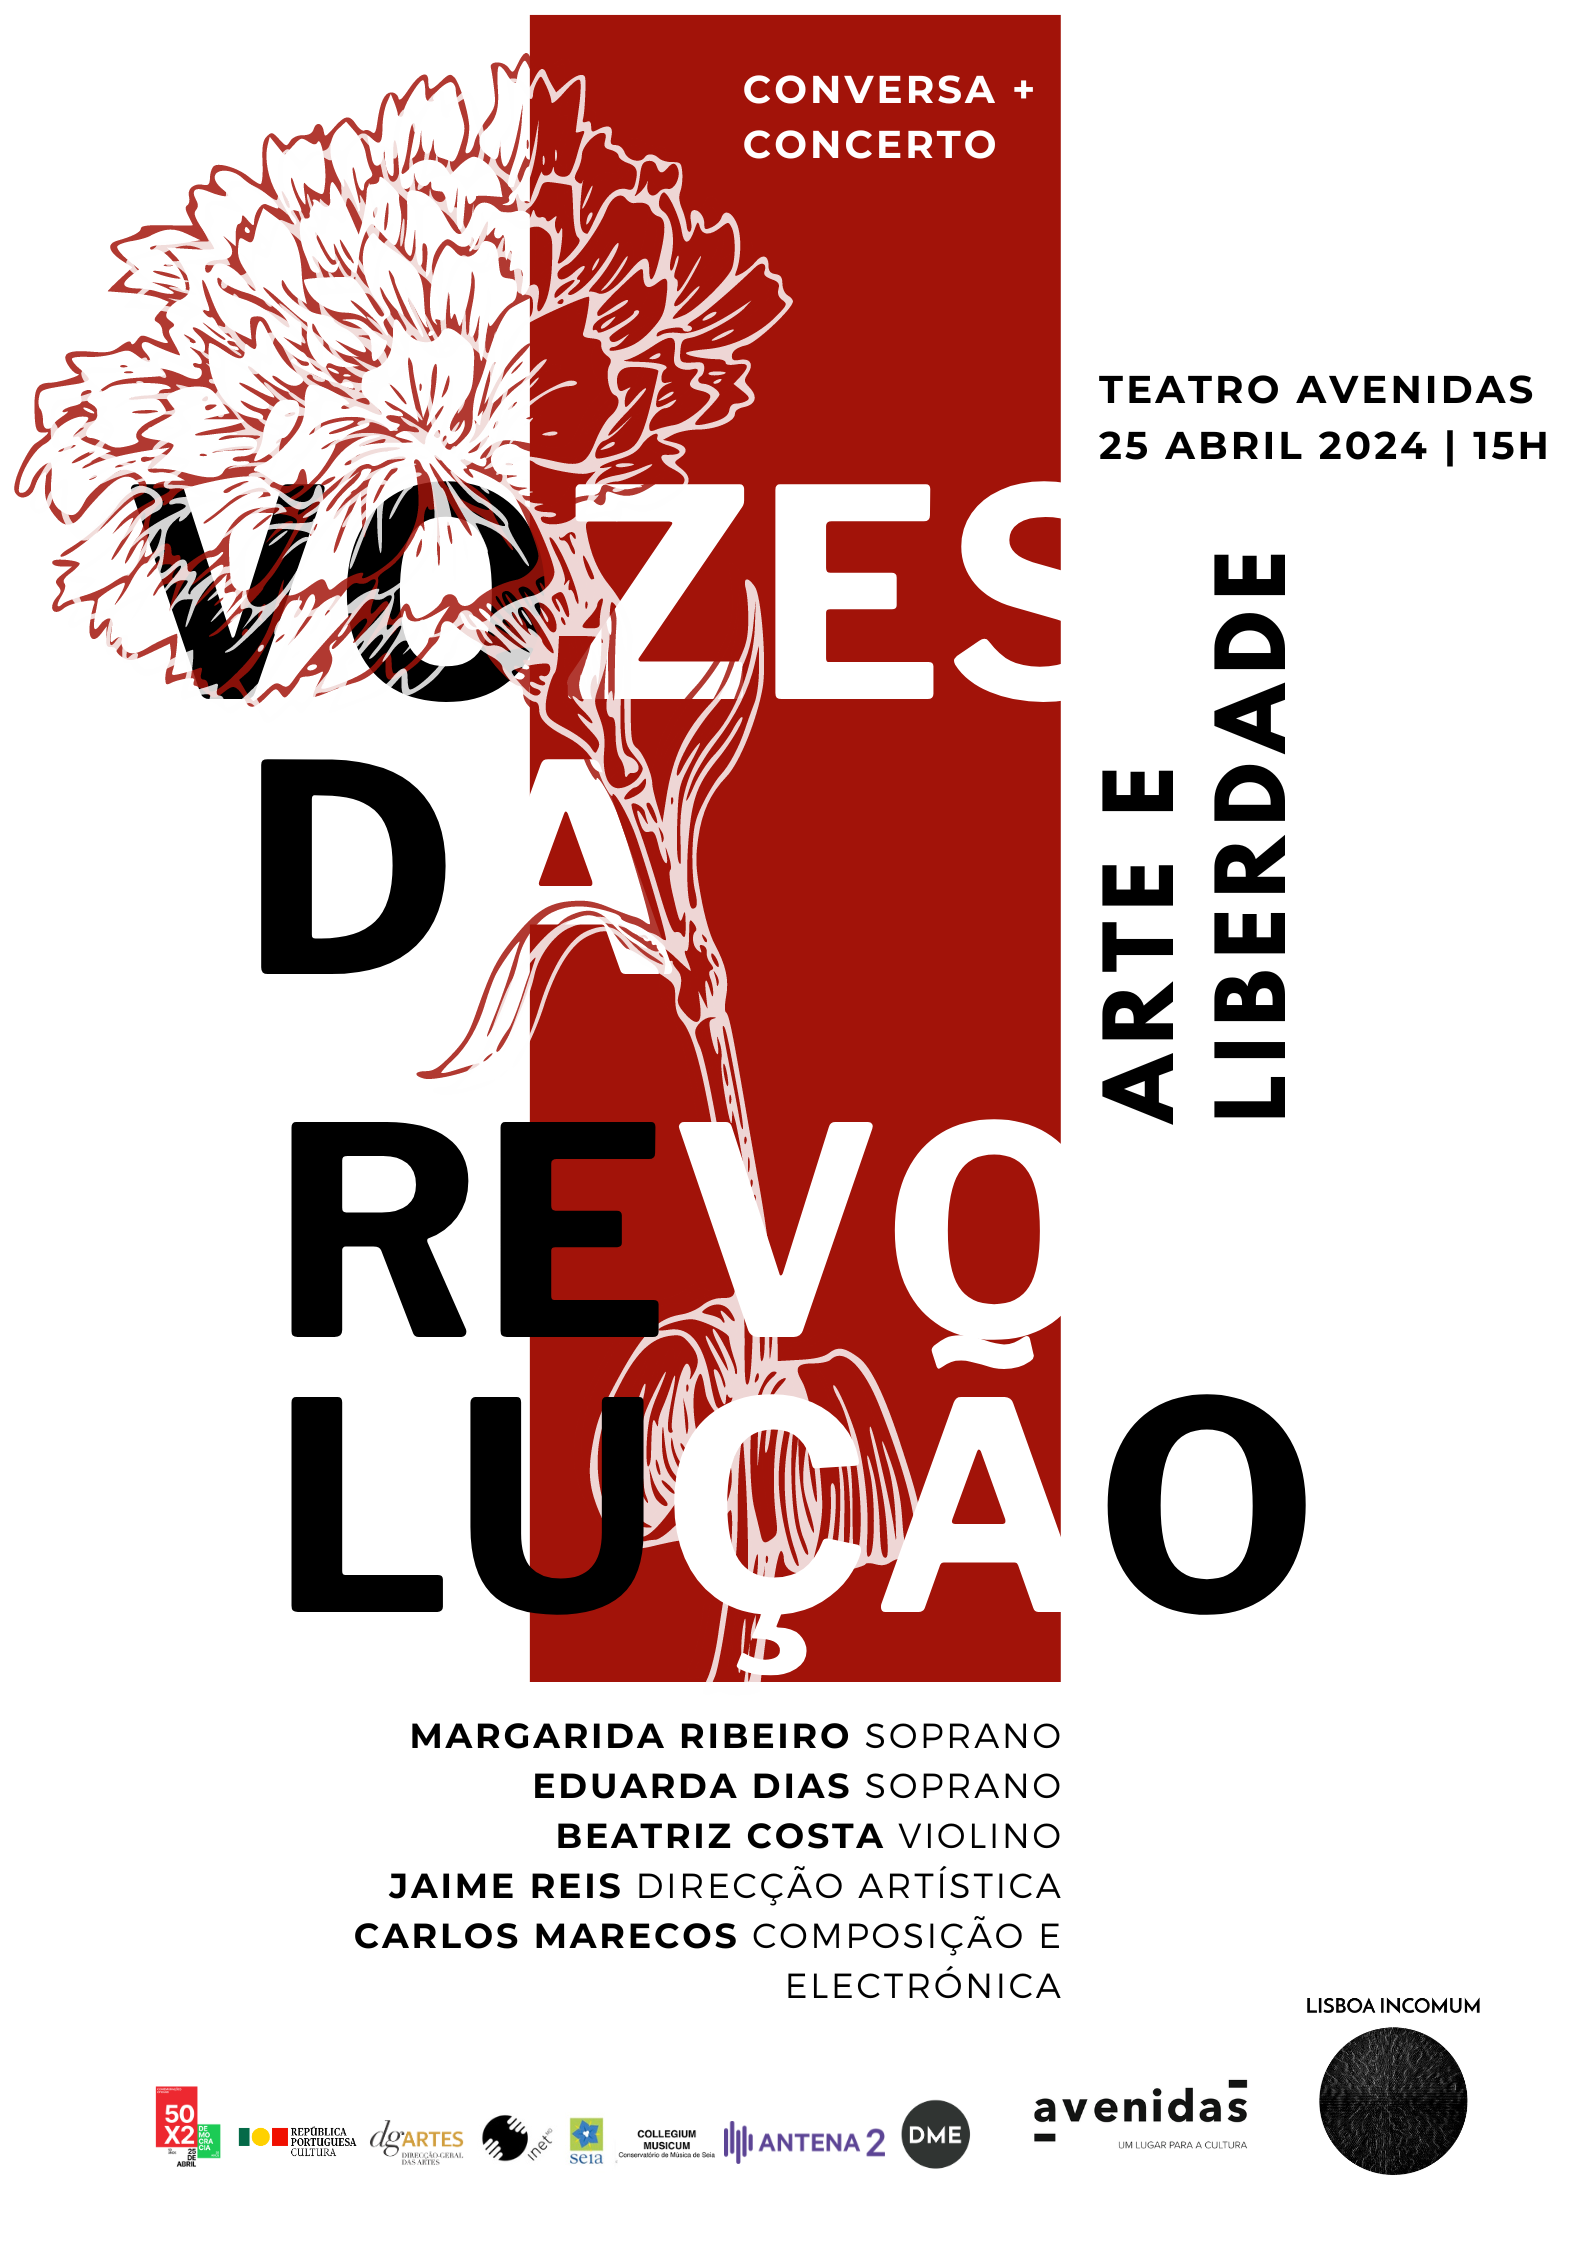 Capa Oficial do Evento Arte e Liberdade - Vozes de Revolução